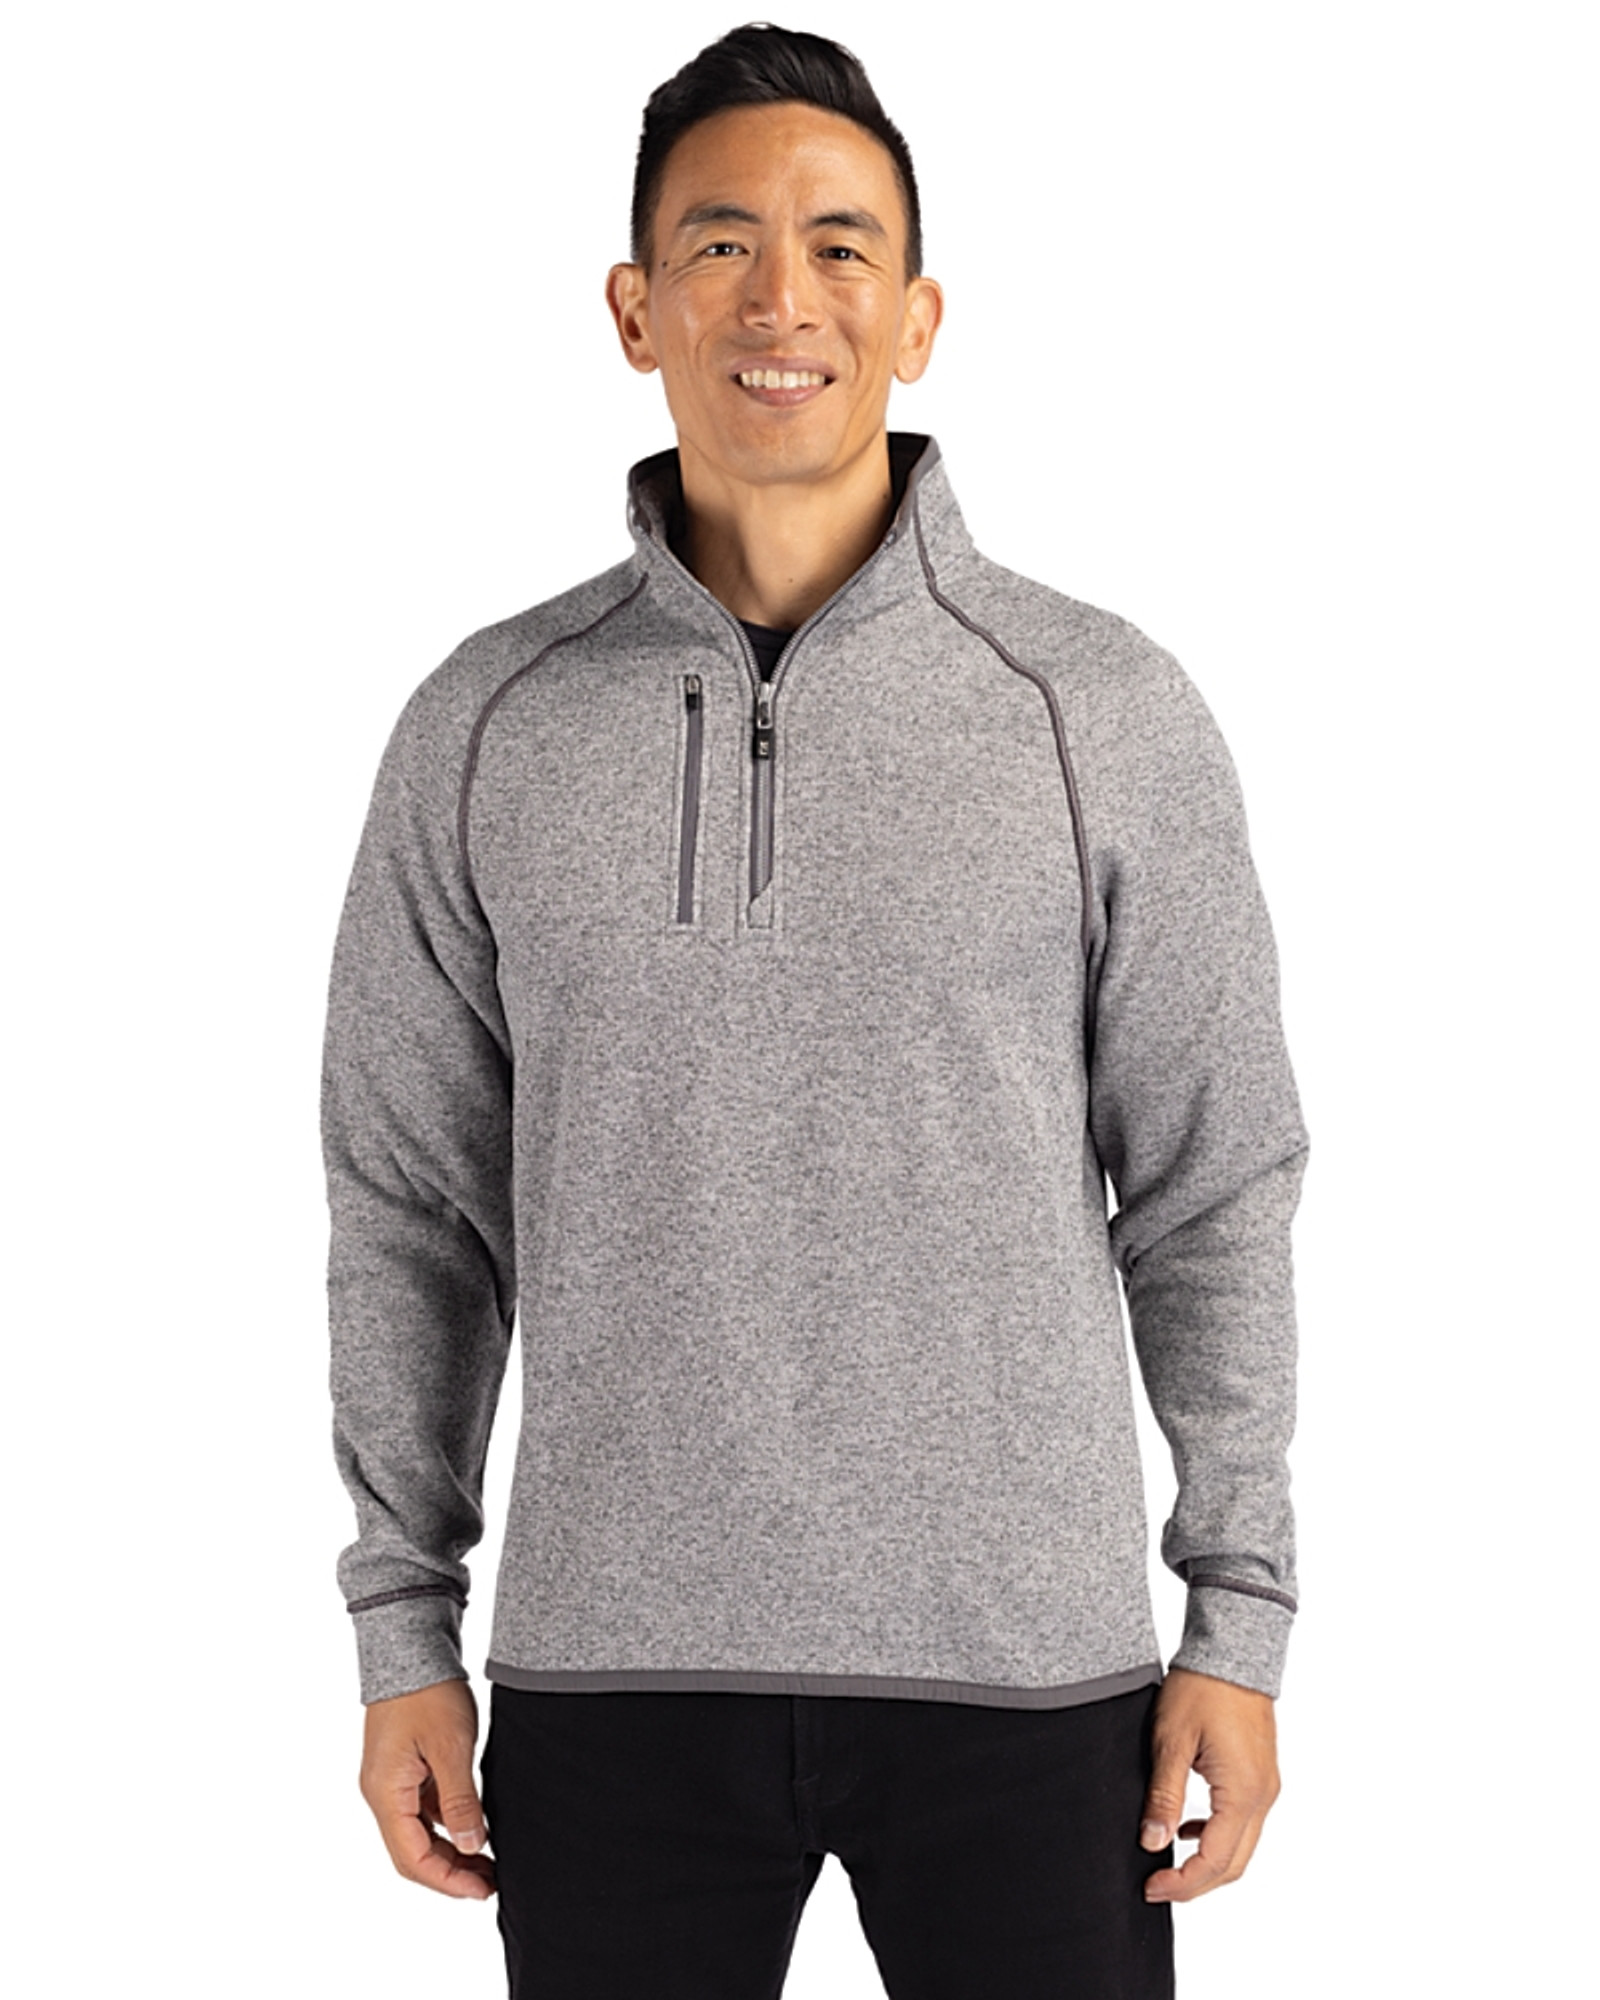 Men's Zip-Up Piqué Fleece Jacket - Men's Sweaters & Sweatshirts